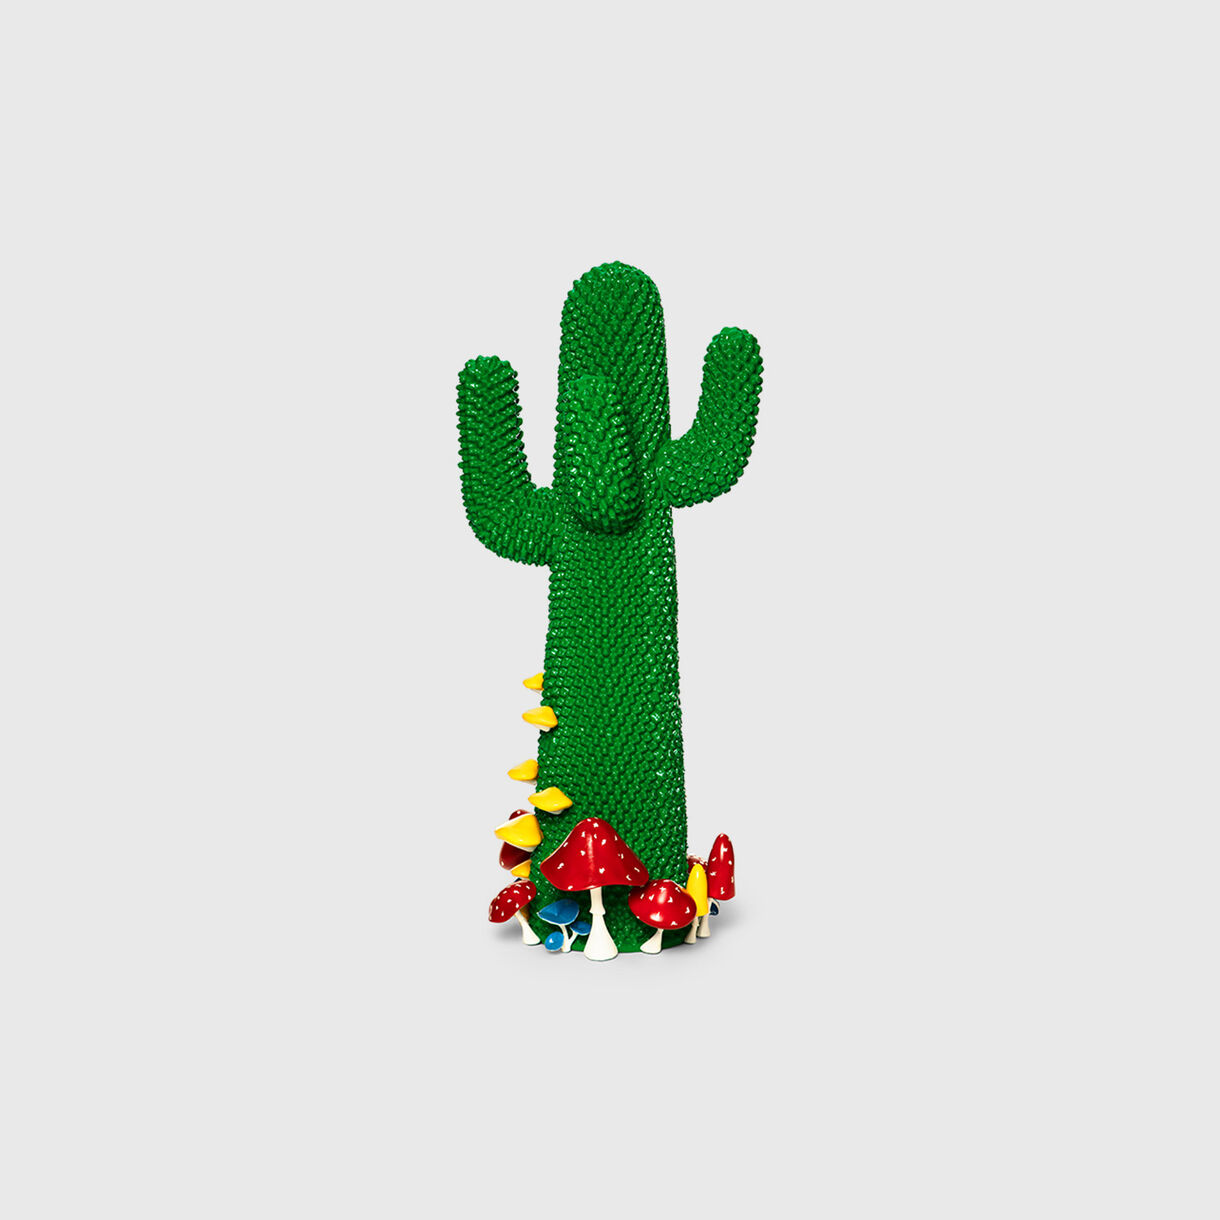 Guframini Shroom Cactus